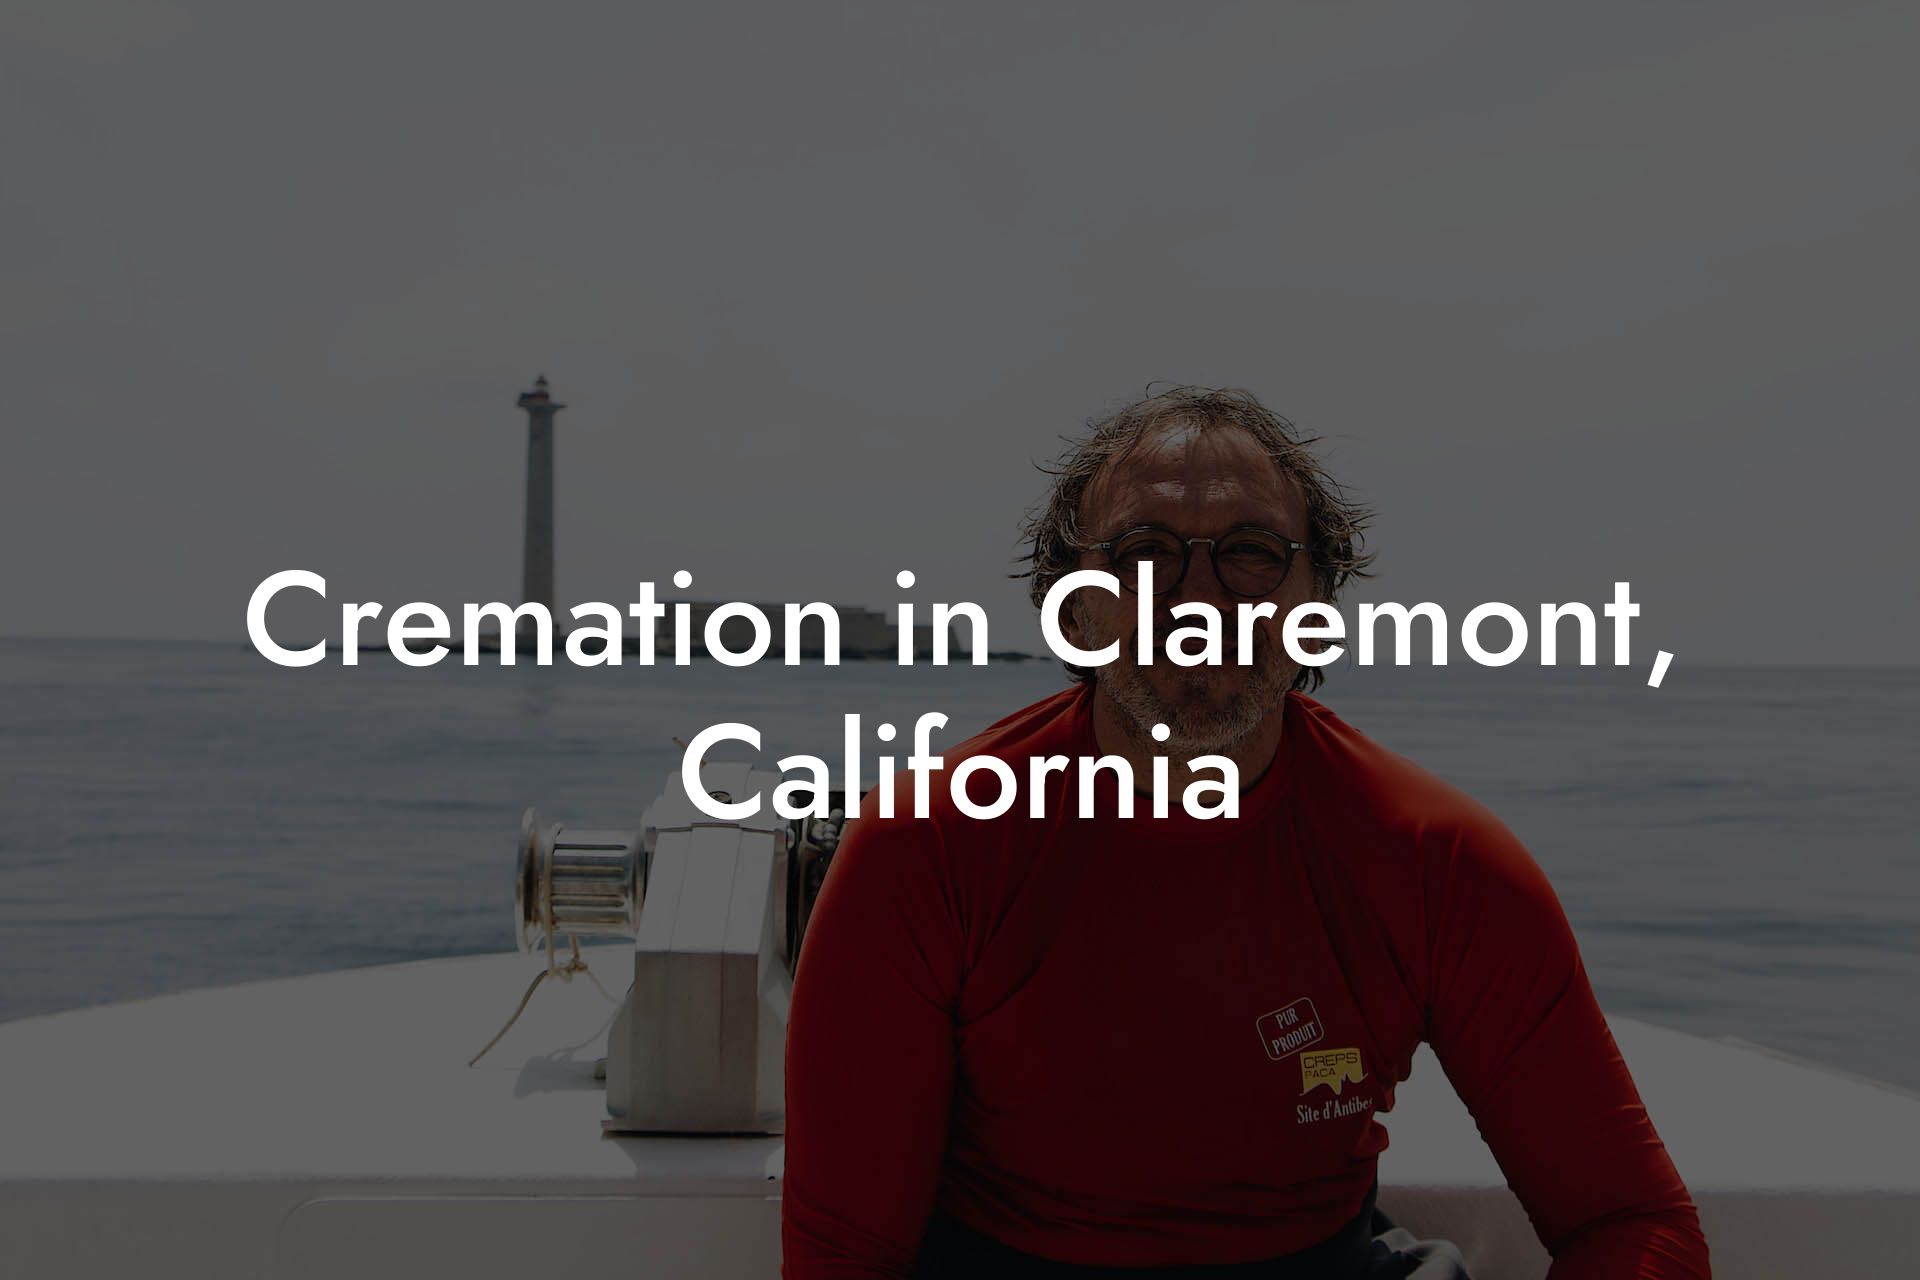 Cremation in Claremont, California